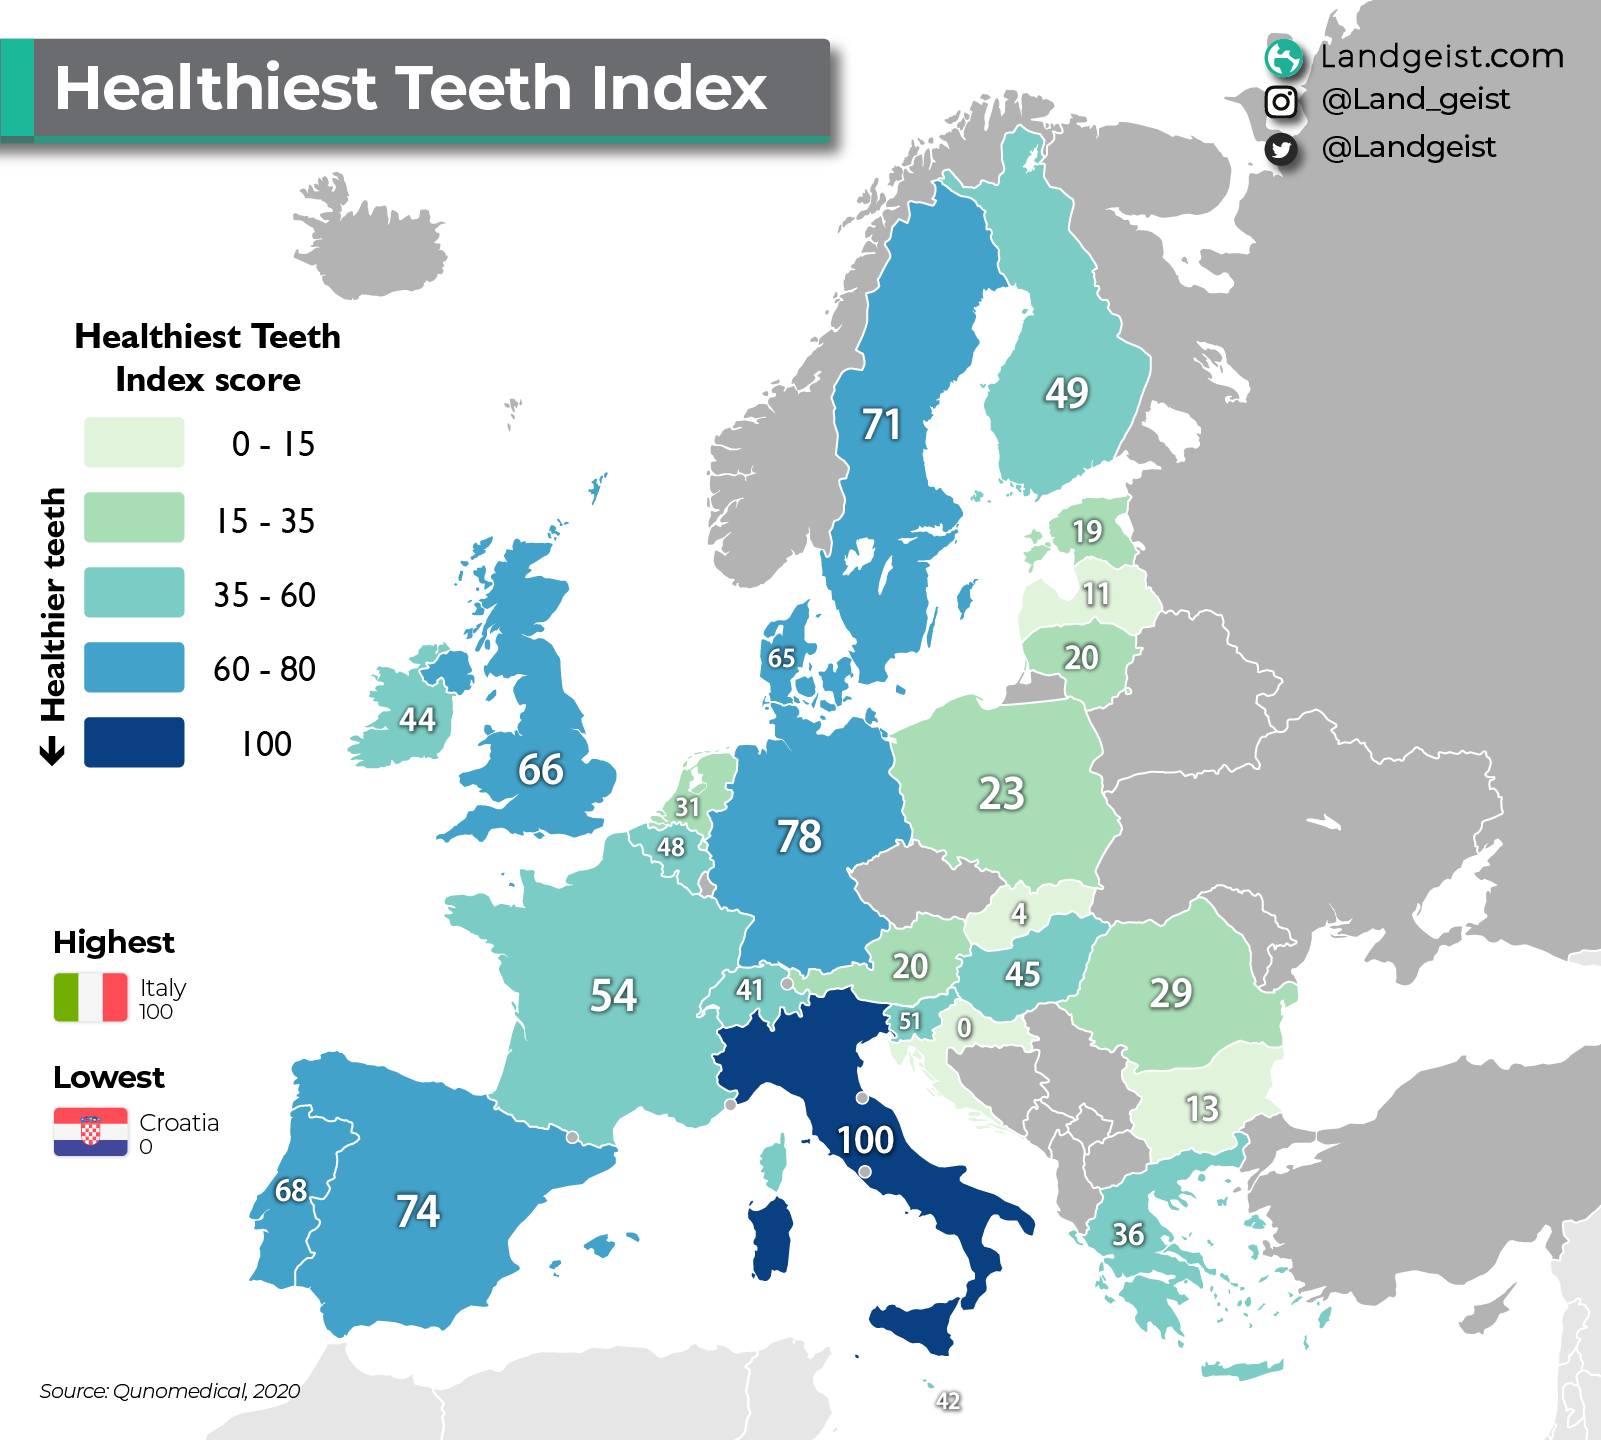 Karte, die zeigt, welche Länder in Europa die gesündesten Zähne haben.